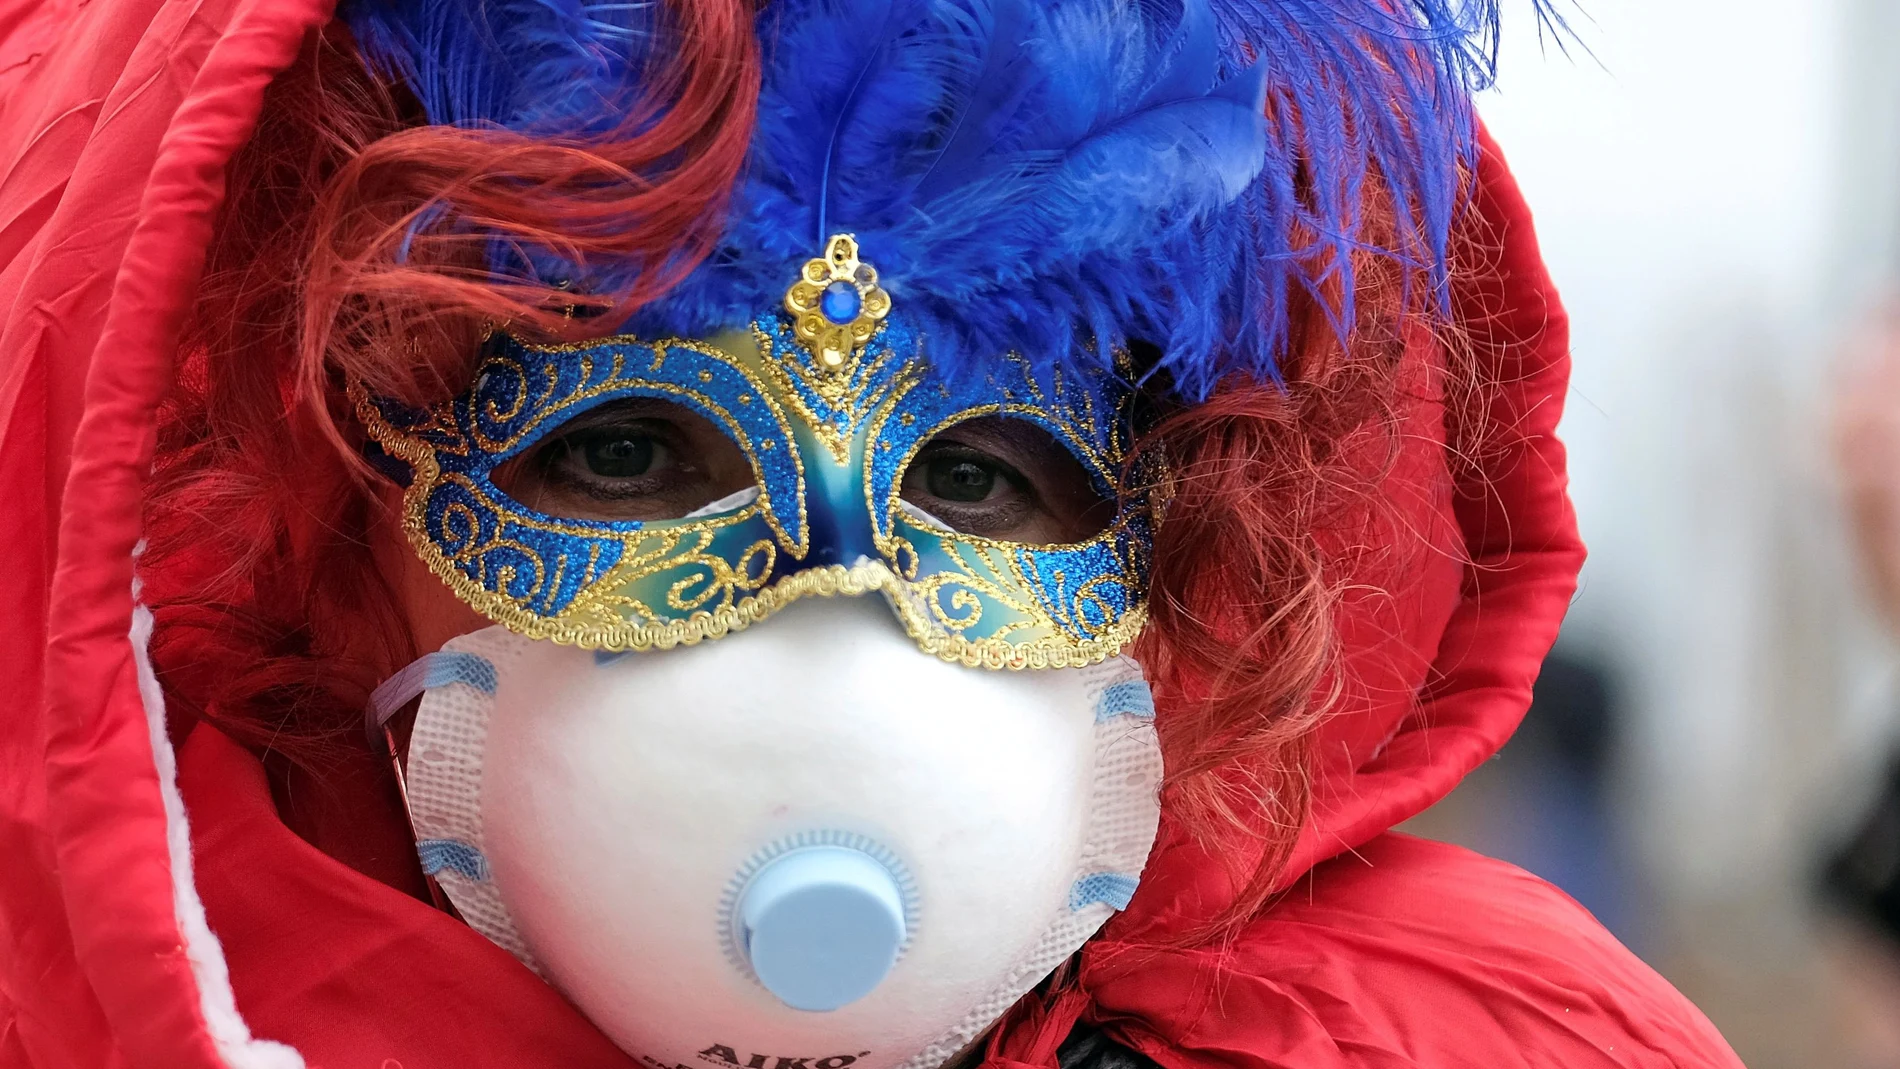 La mascarilla por el coronavirus se confunde entre el disfraz en Venecia que ha suspendido sus carnavales